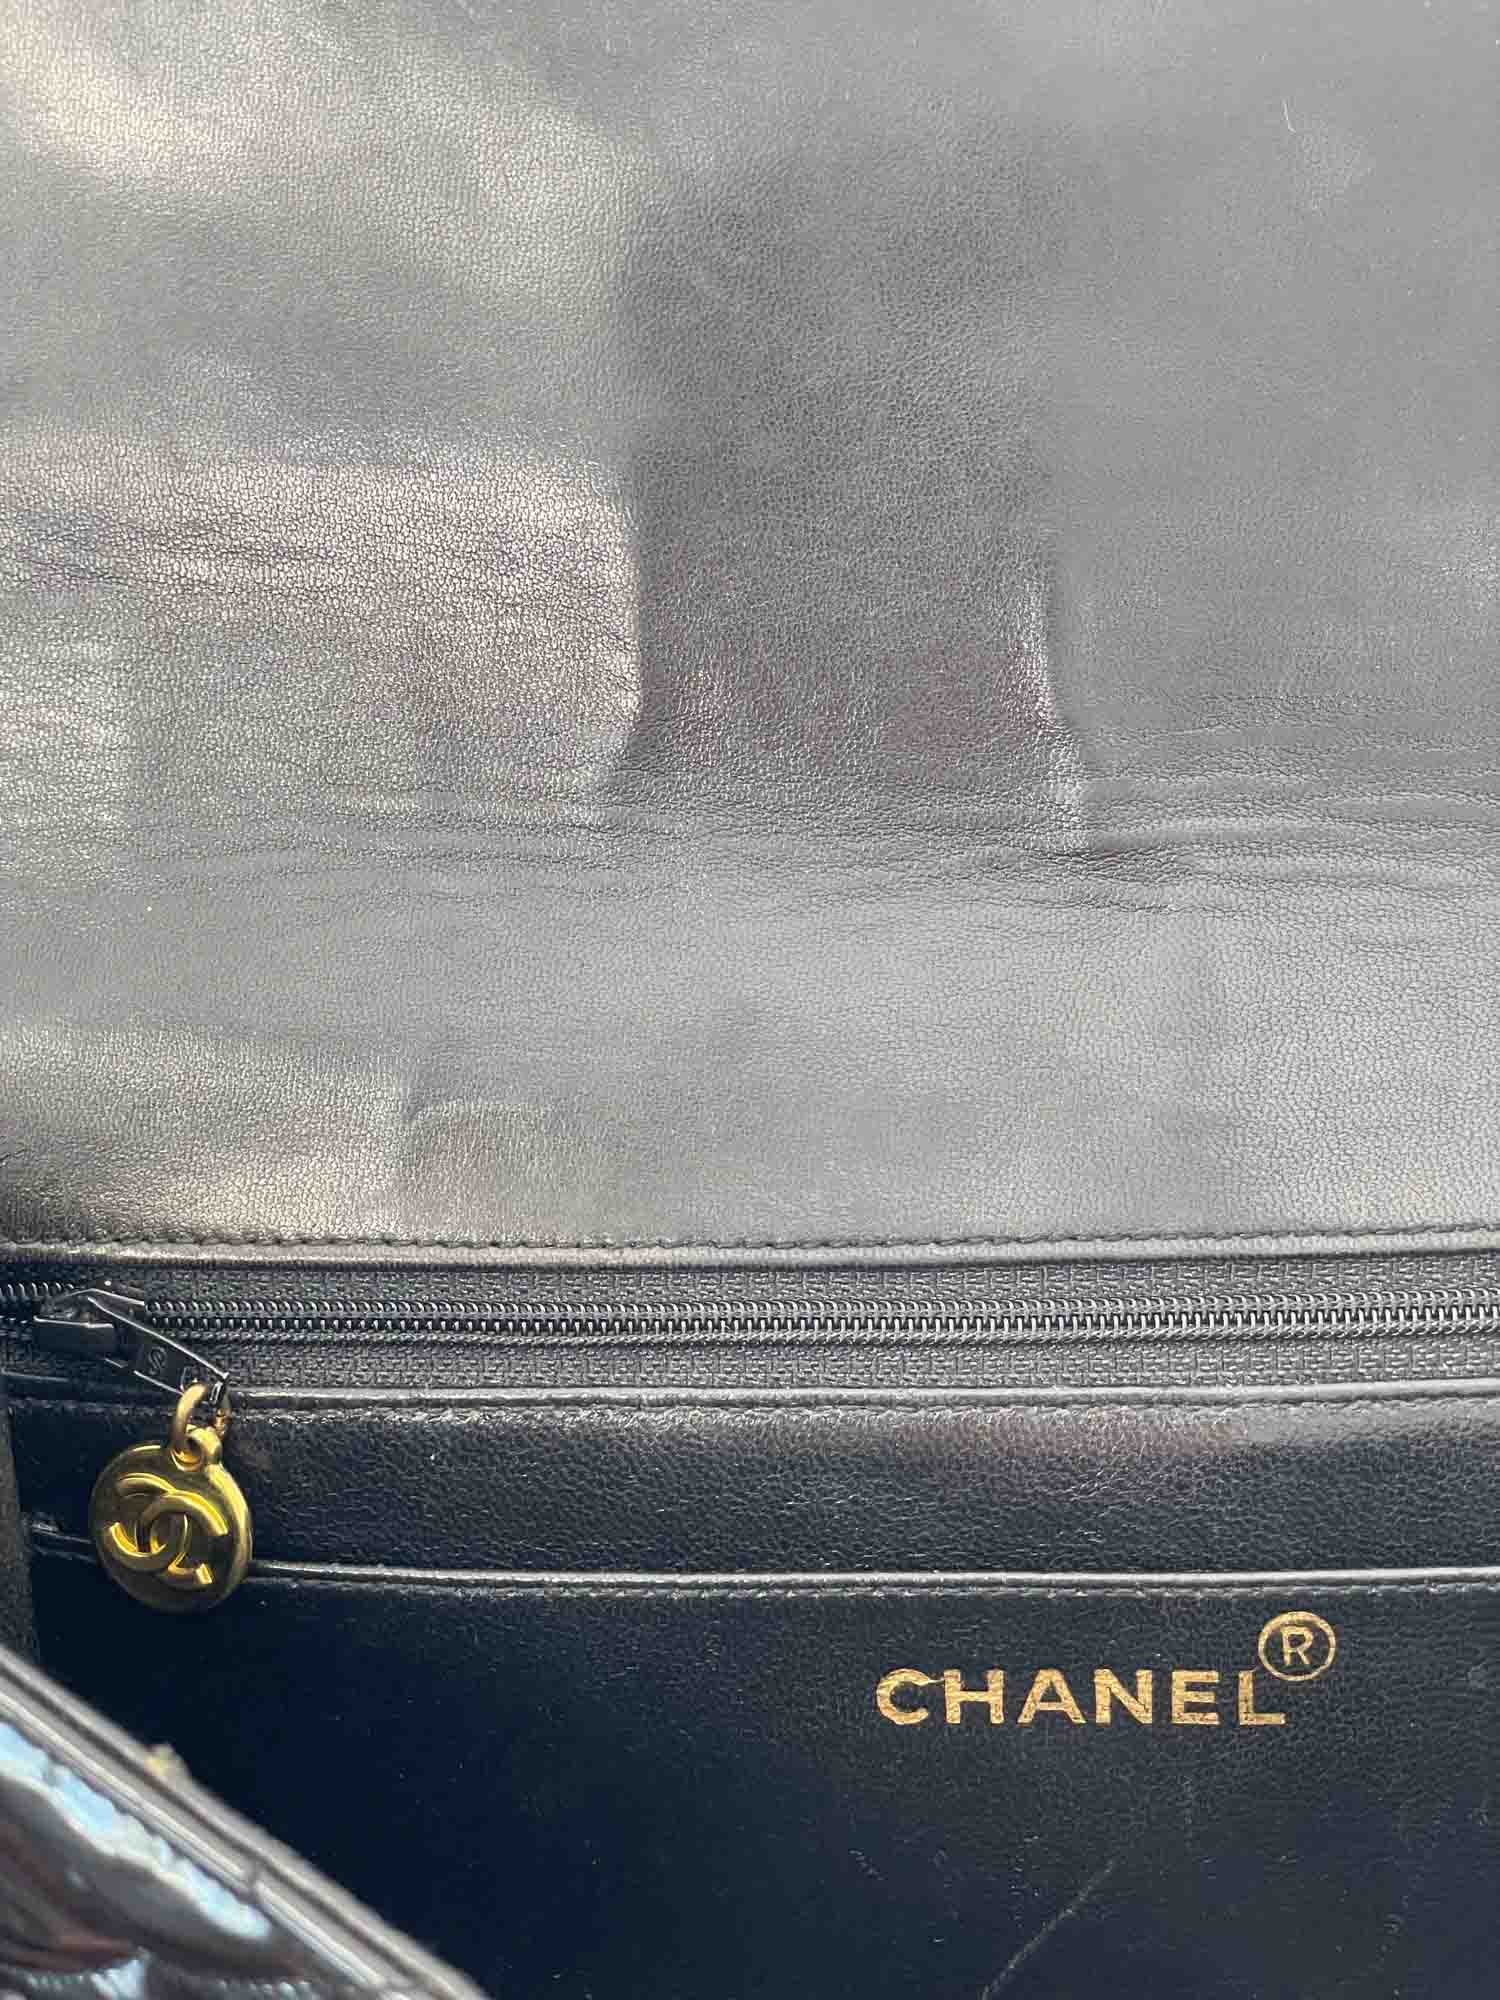 CHANEL Vintage 24k Gold CC Logo Patent Leather Backpack Black